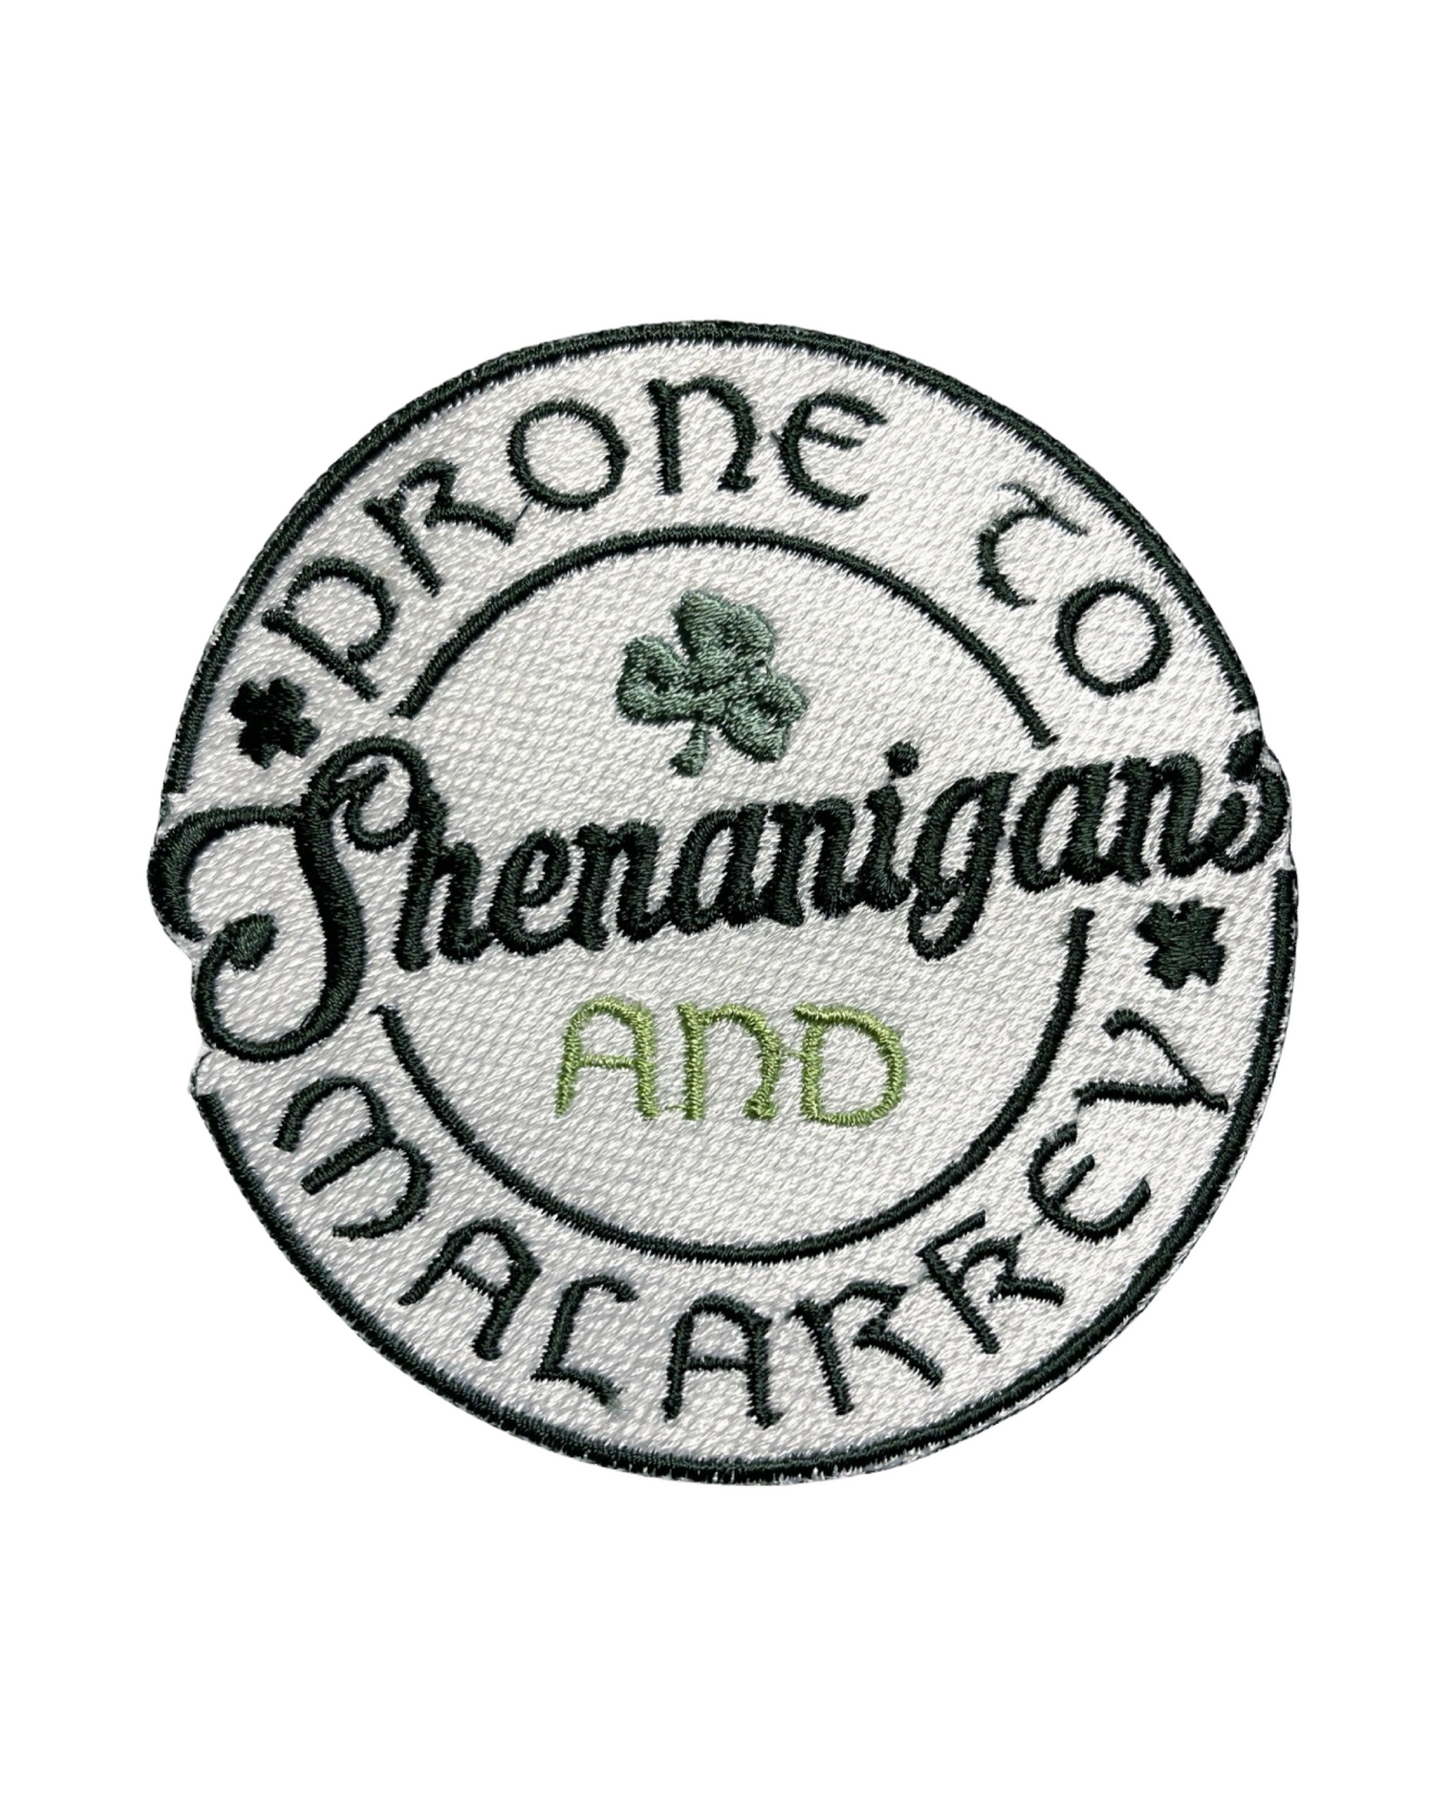 Shenanigans & Malarkey Large Iron-on or Sew-on Patch